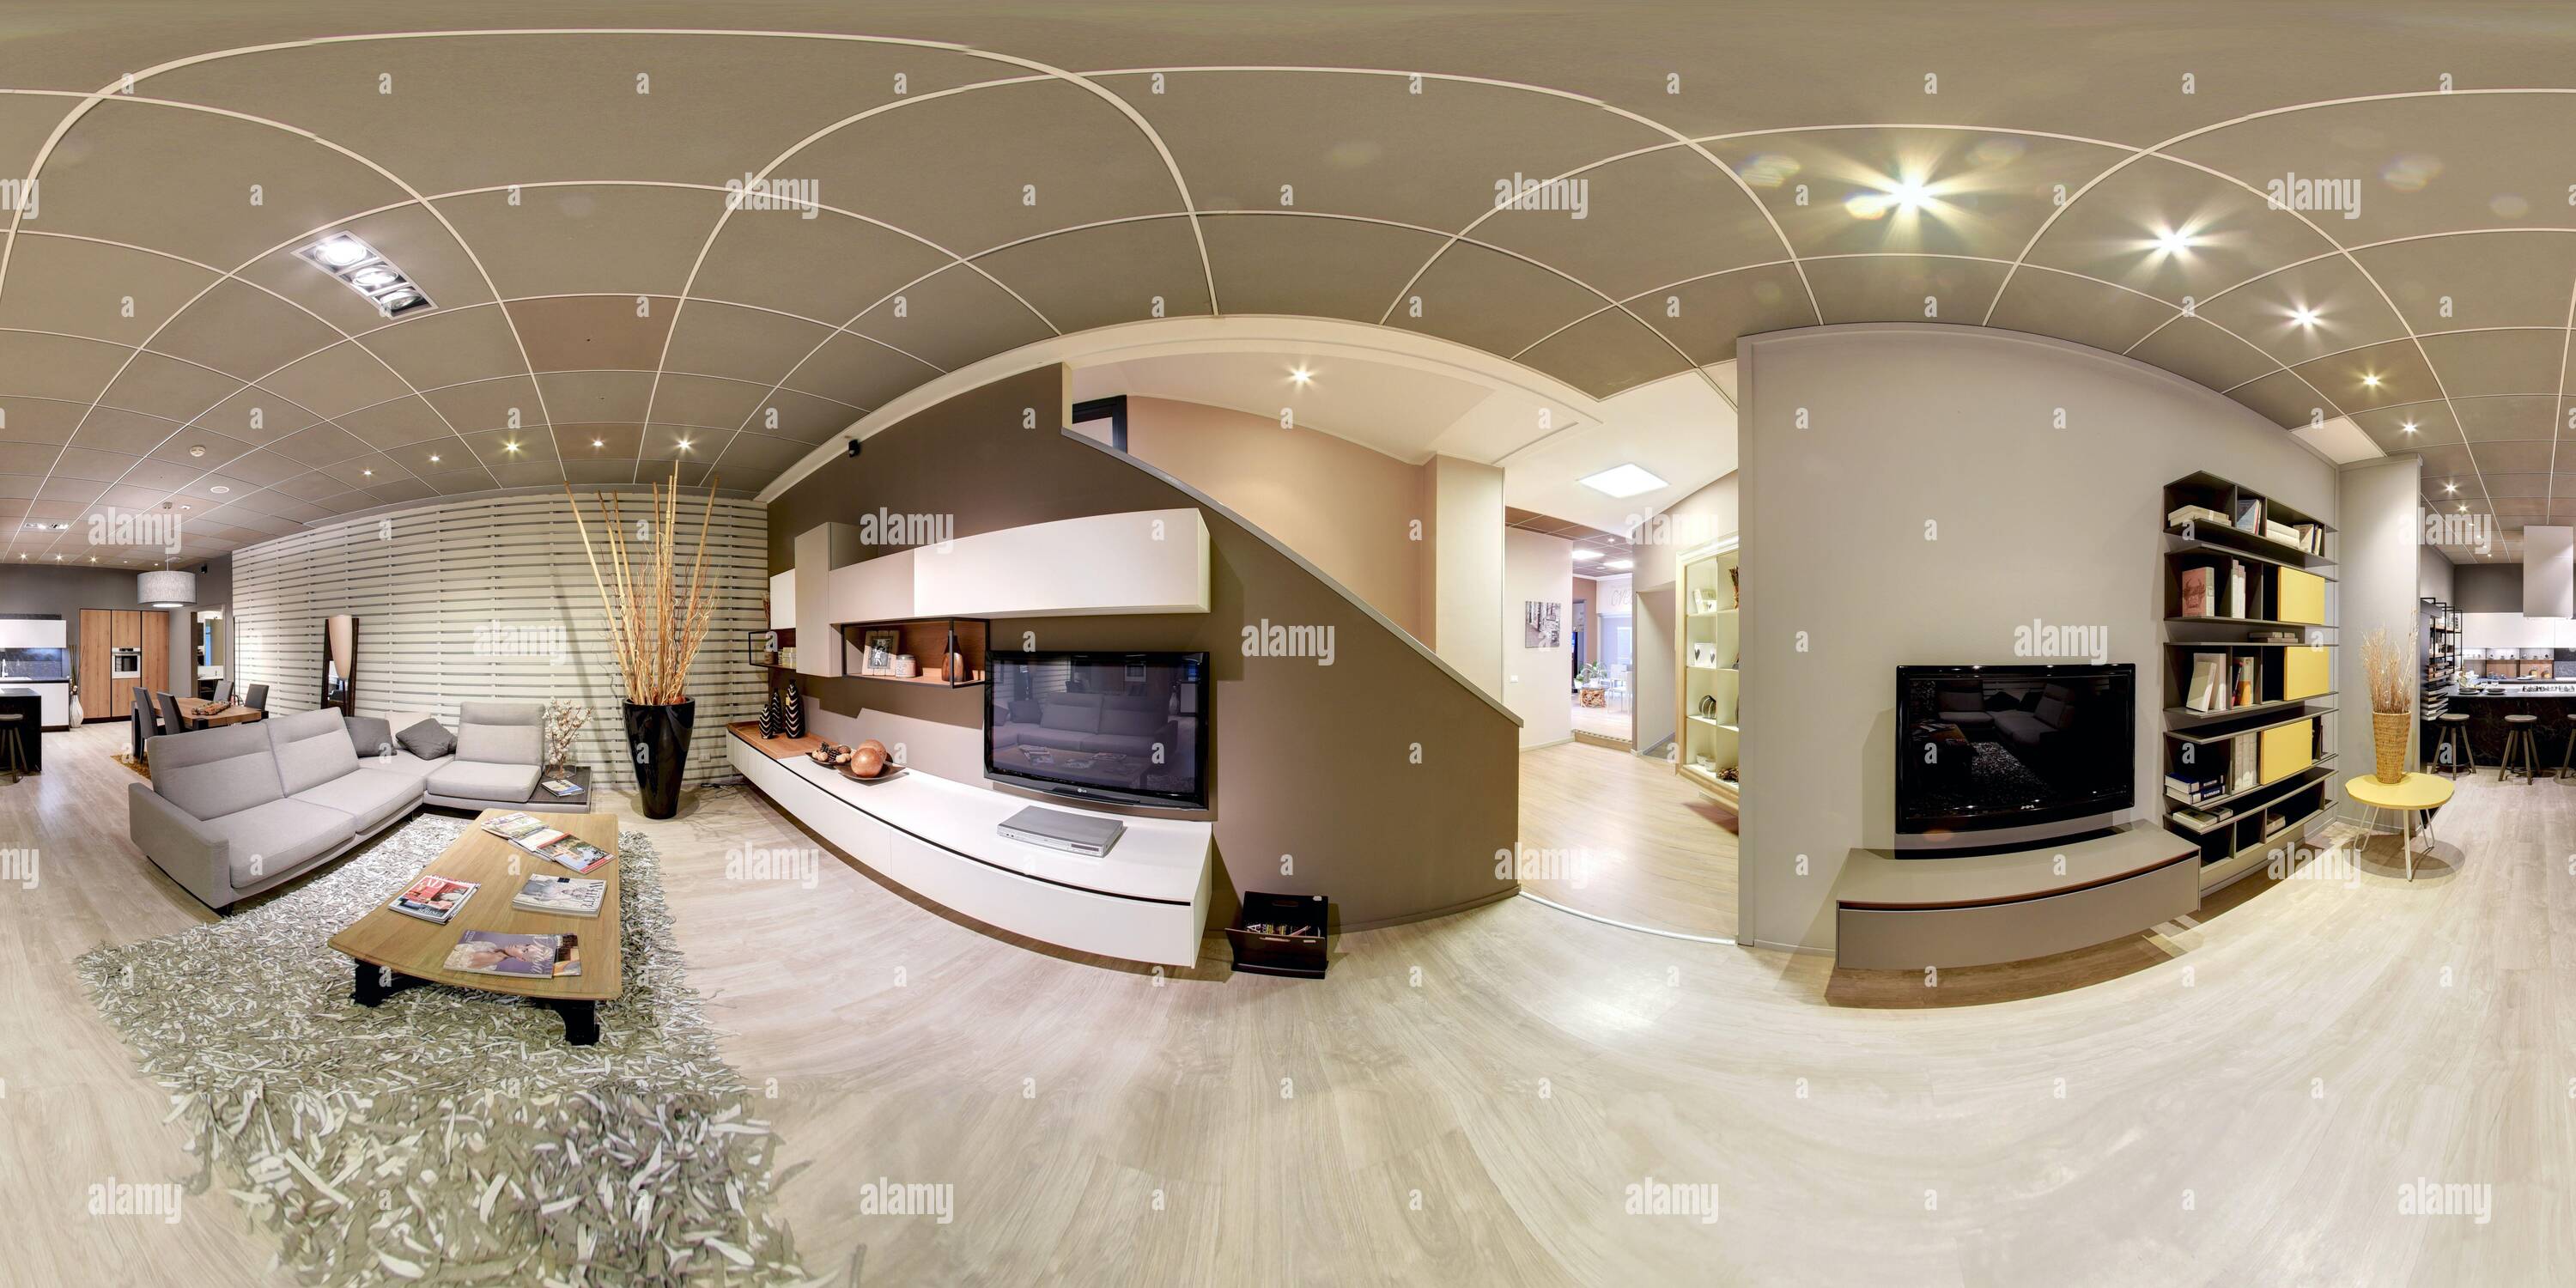 Visualizzazione panoramica a 360 gradi di panorama a 360 gradi di un esclusivo soggiorno interno con decorazioni beige, mobili moderni ed effetti personali